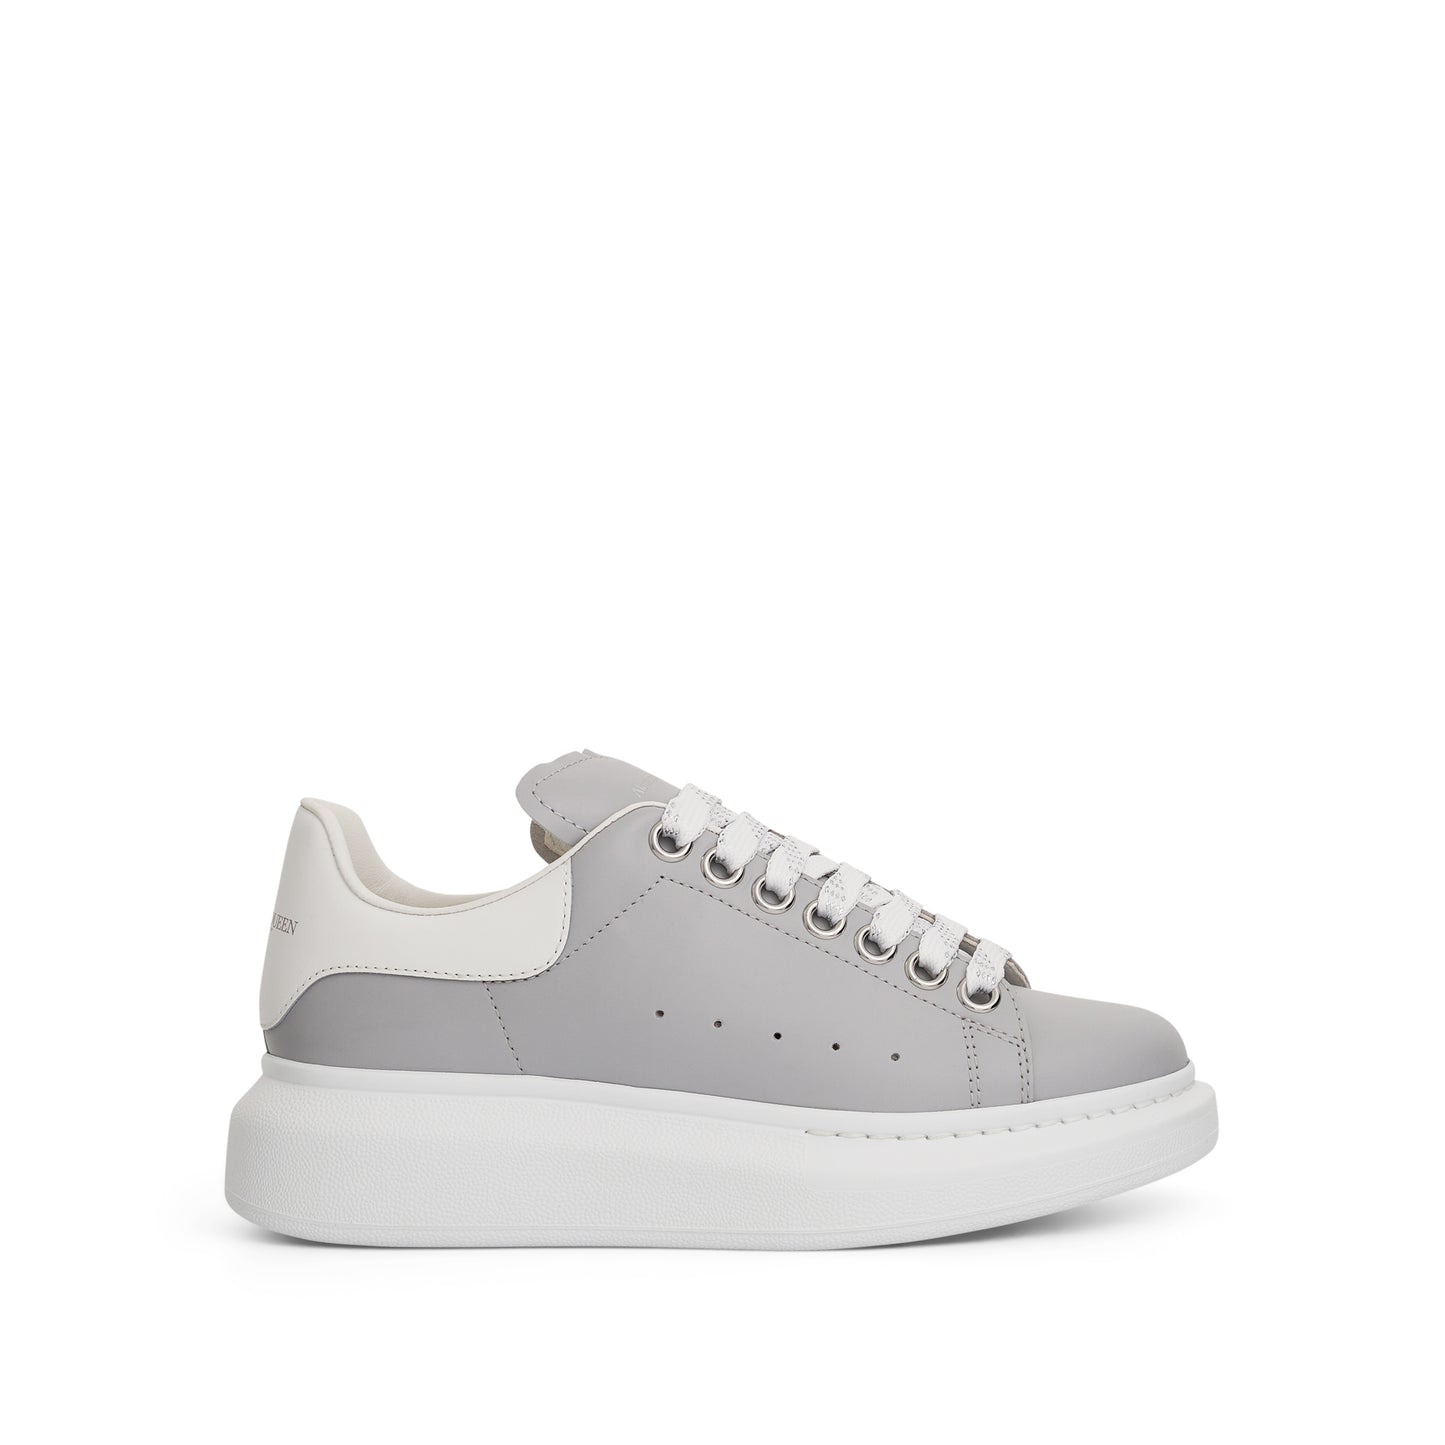 Larry Oversized Sneaker in Silver Grey/White